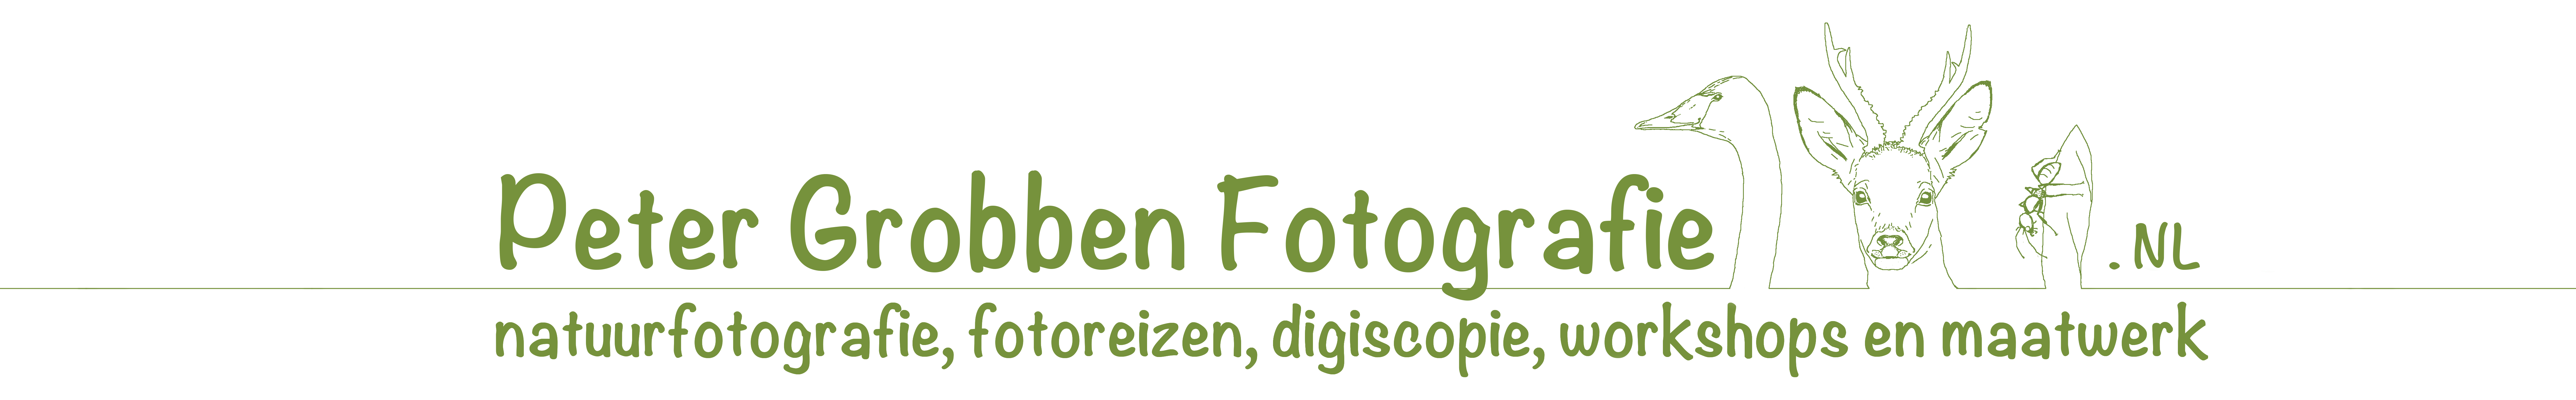 Peter Grobben Fotografie logo definitief2 lange lijn